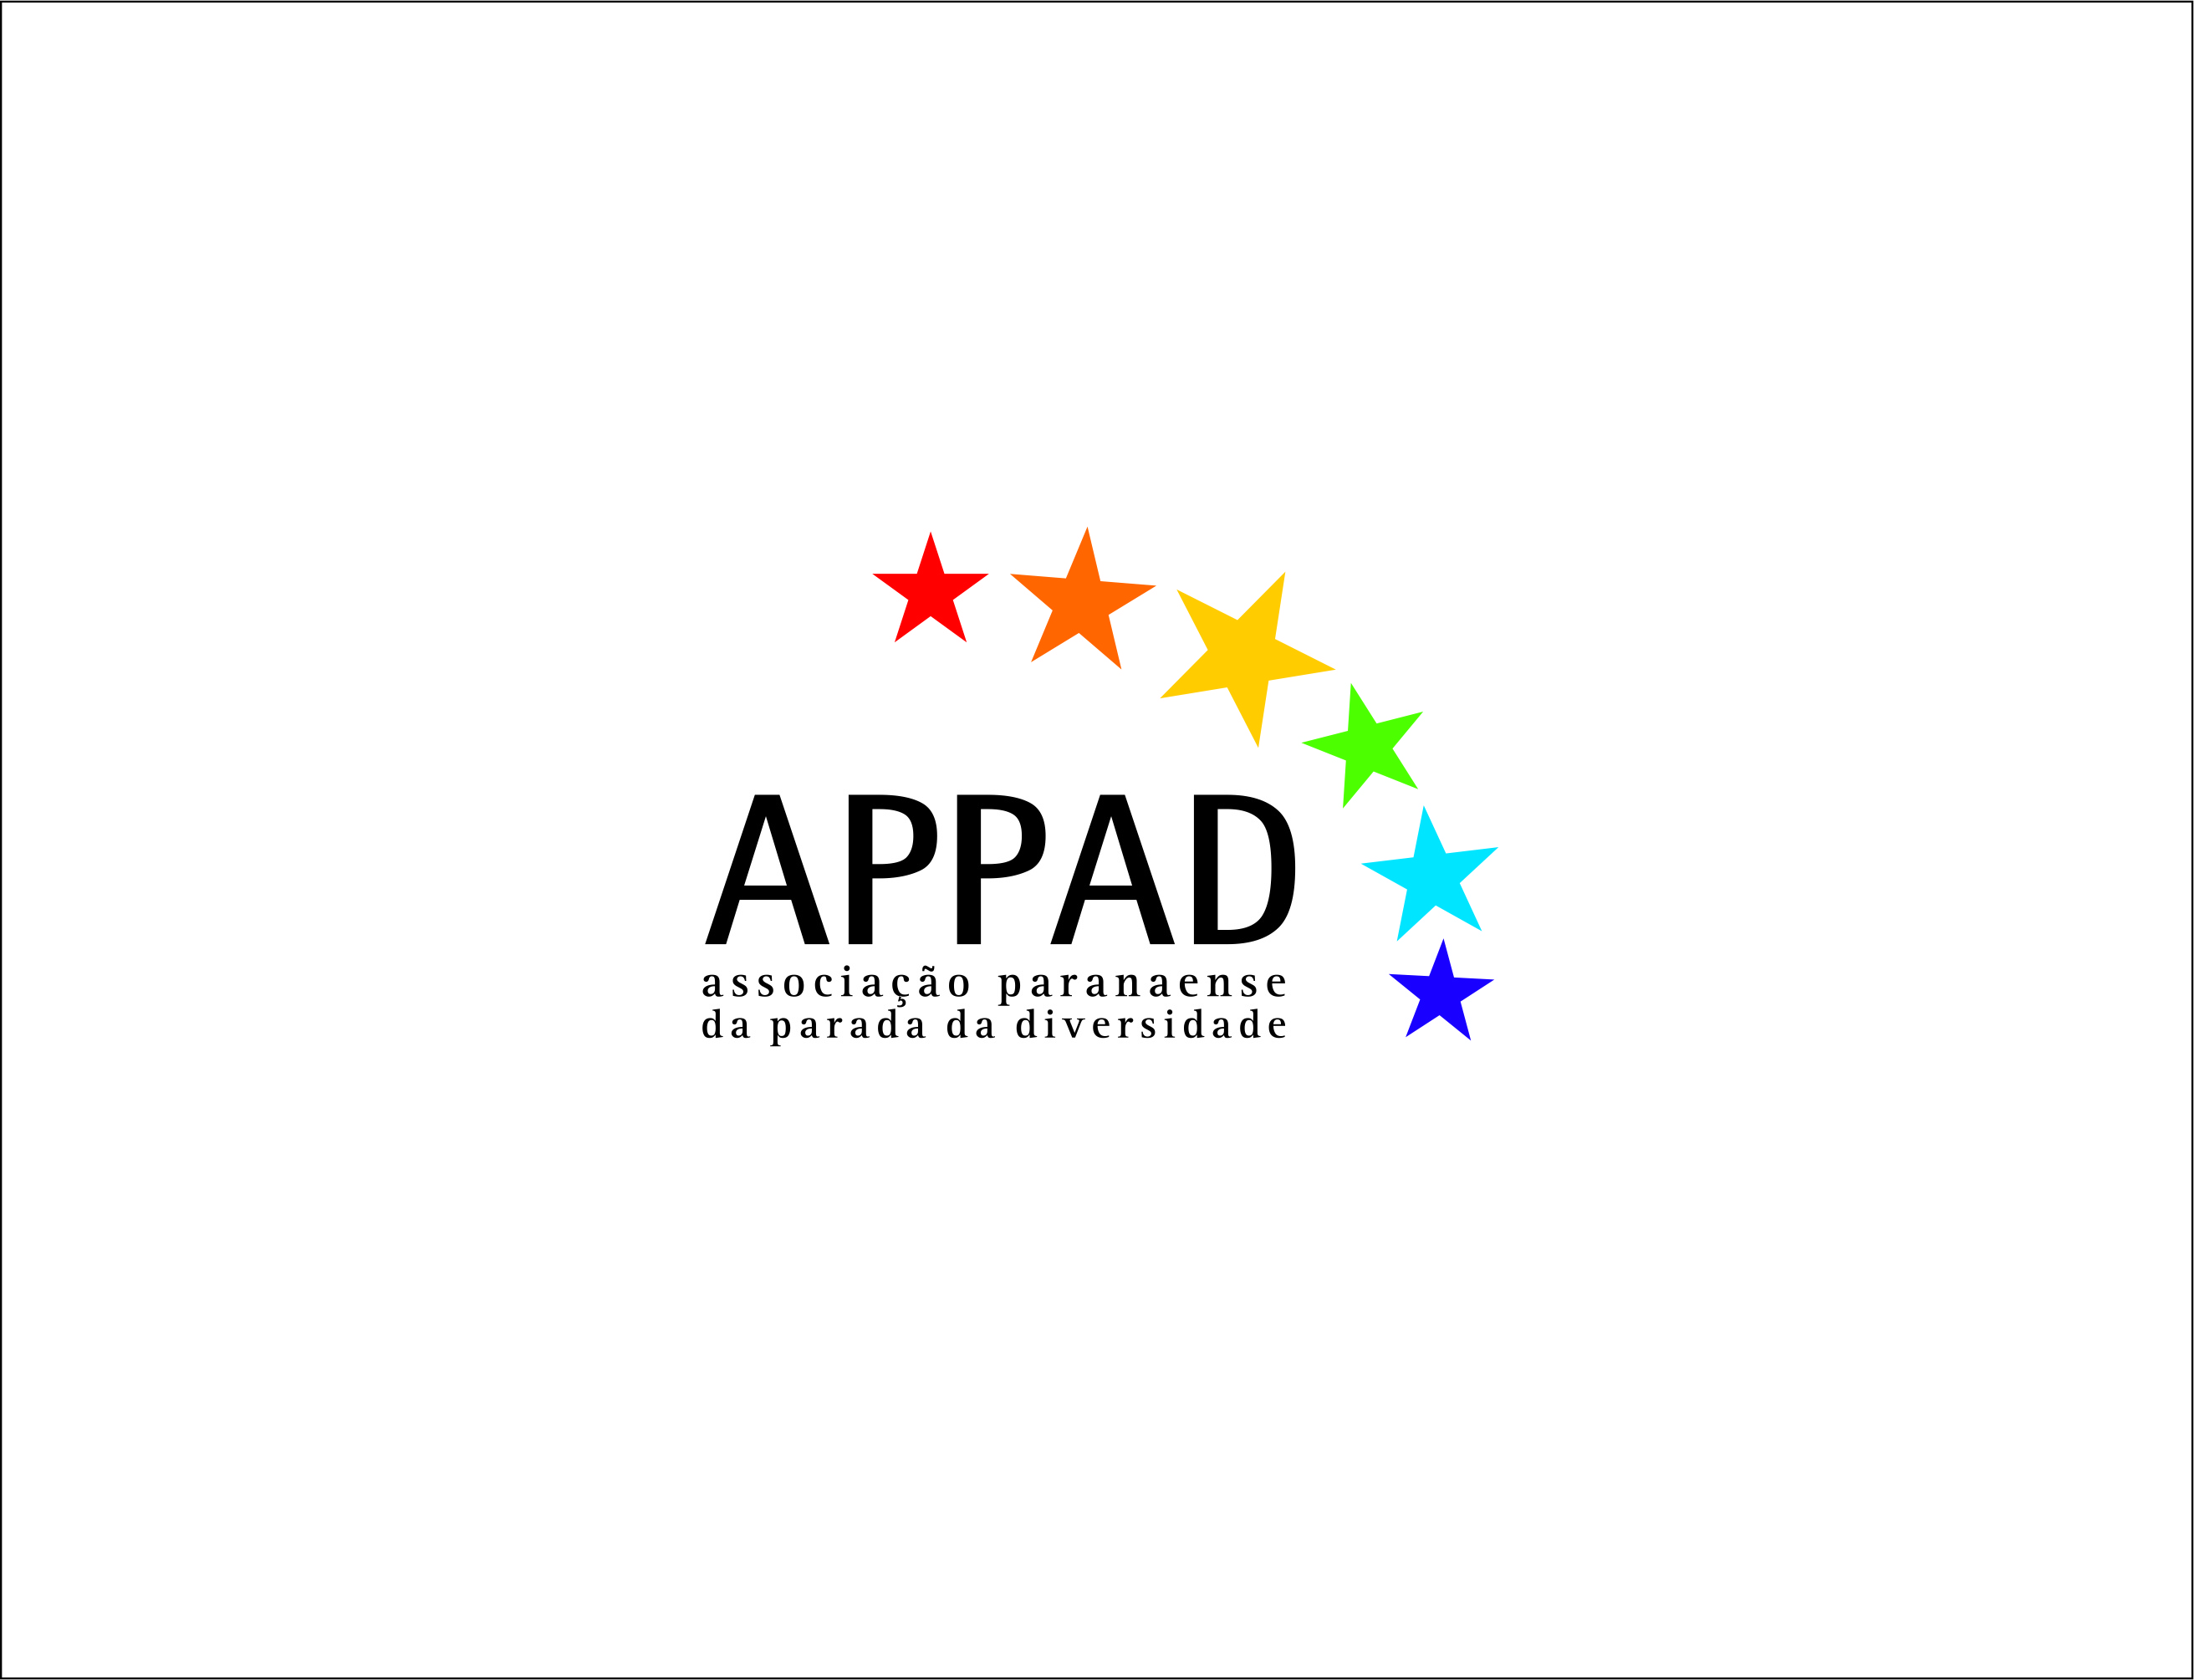 Associação Paranaense da Parada da Diversidade - APPAD